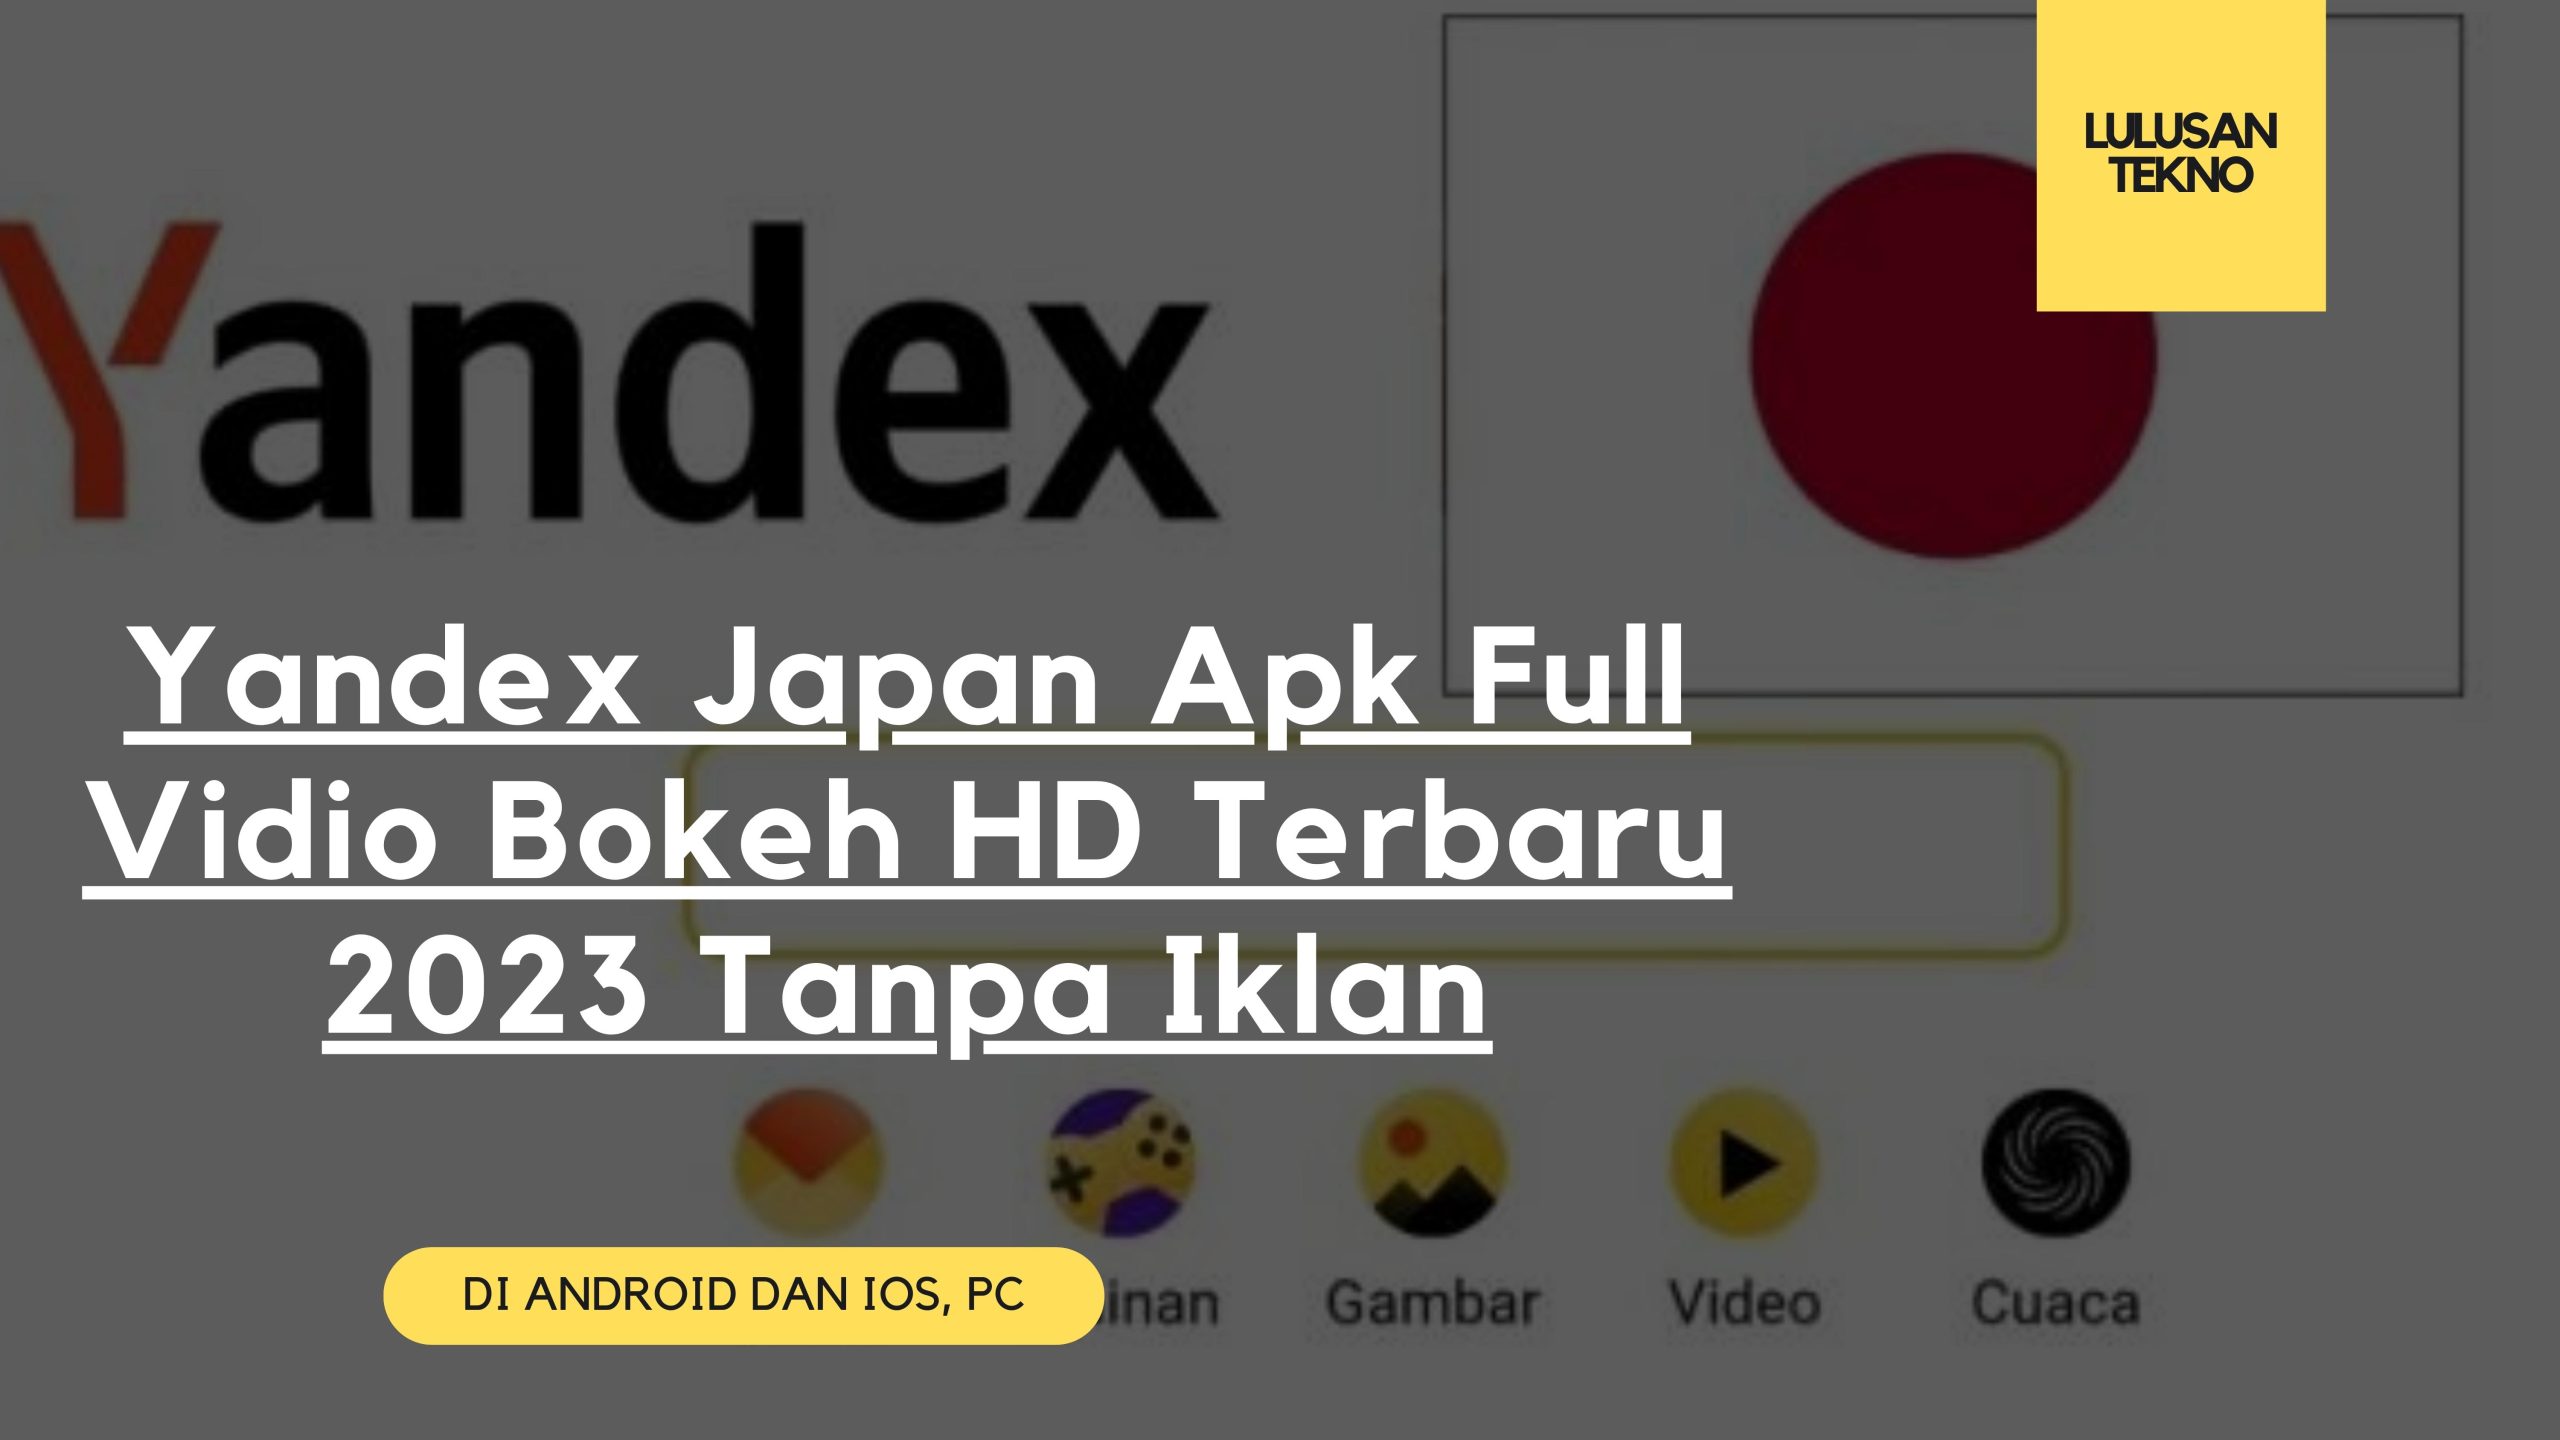 Yandex Japan Apk Full Vidio Bokeh HD Terbaru 2023 Tanpa Iklan